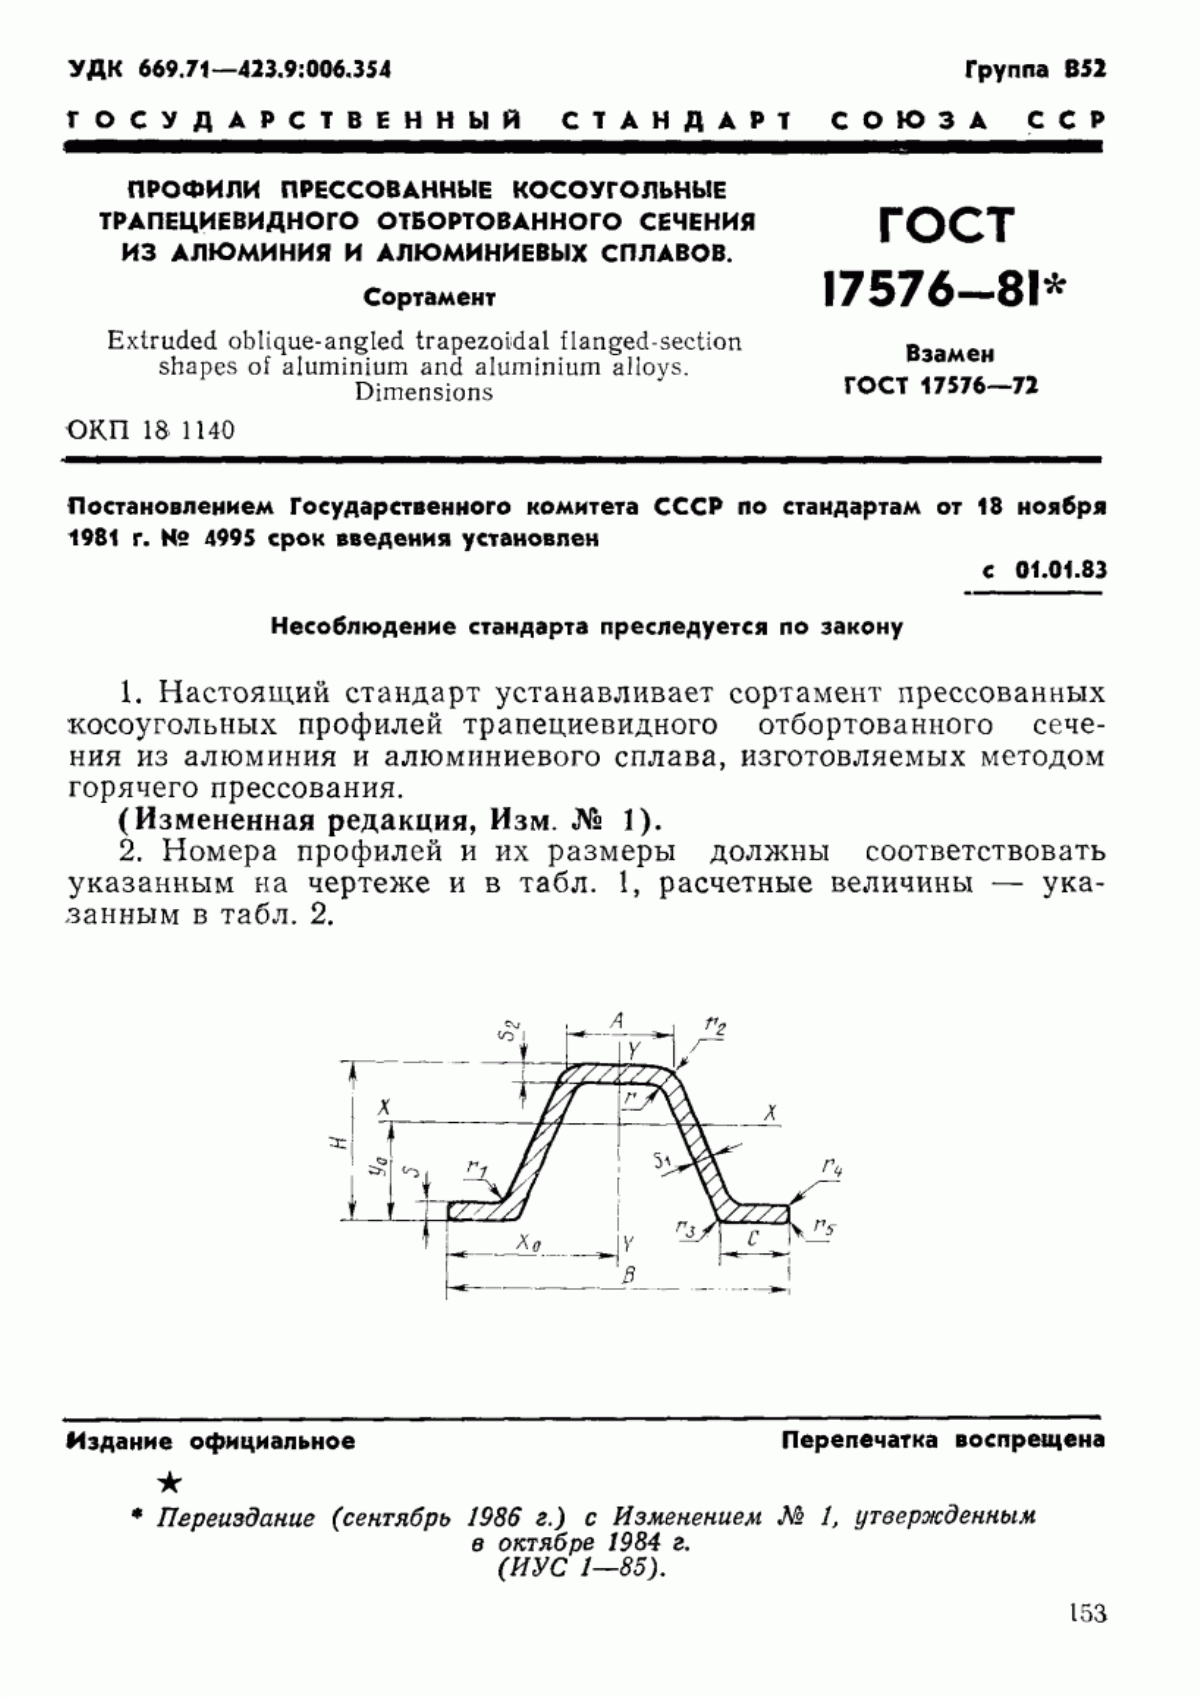 ГОСТ 17576-81 Профили прессованные косоугольные трапециевидного отбортованного сечения из алюминия и алюминиевых сплавов. Сортамент